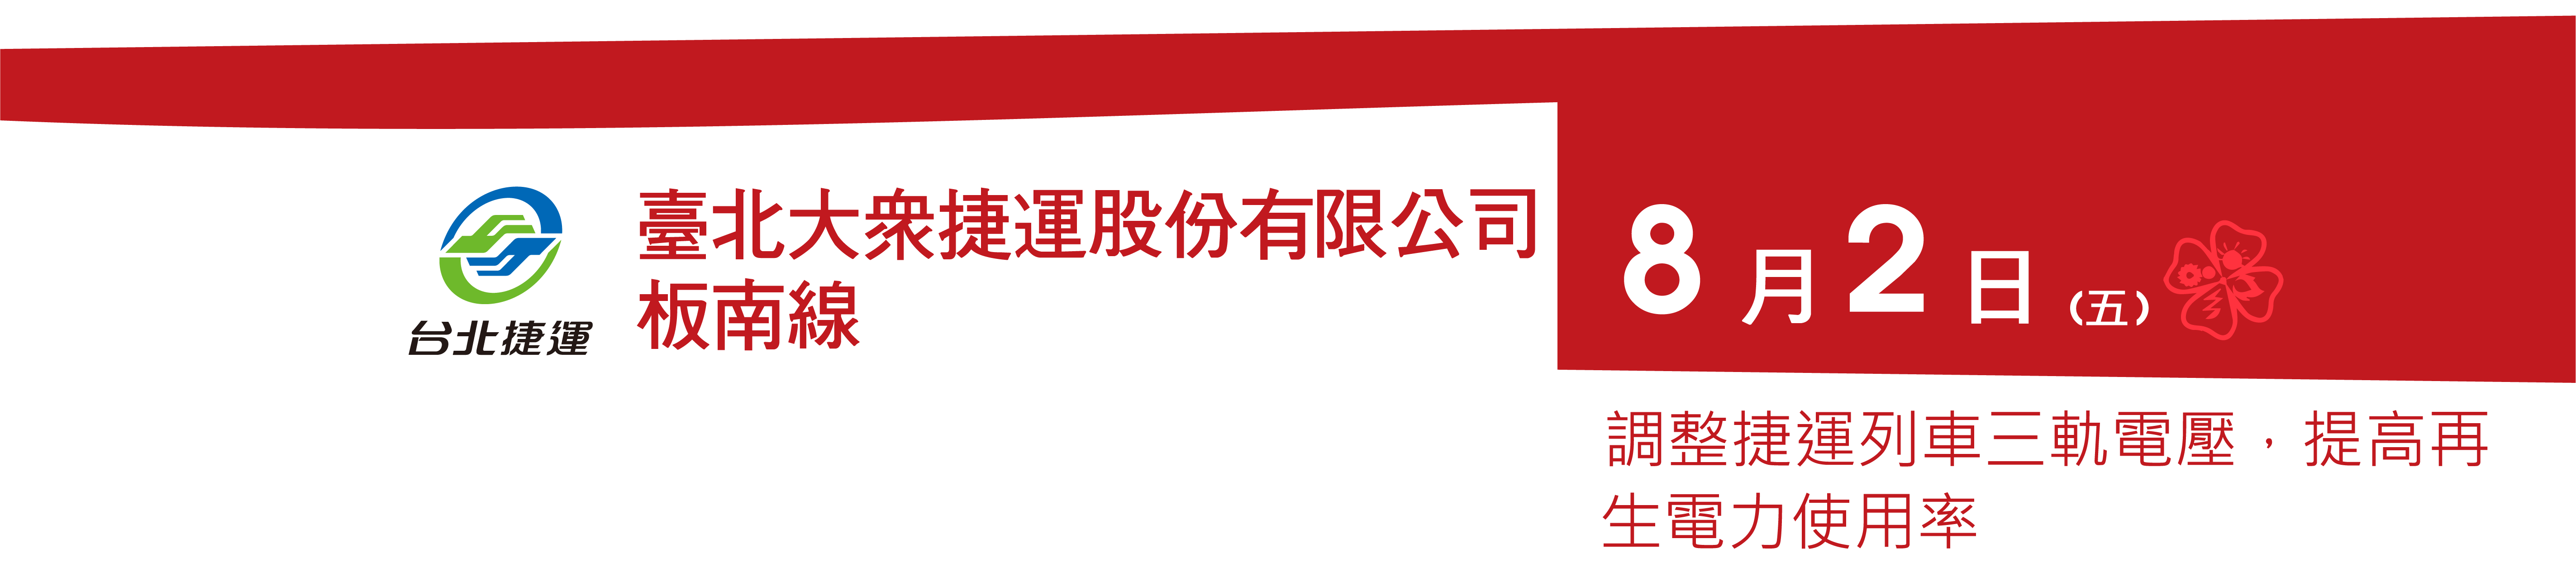 台北大眾捷運股份有限公司板南線